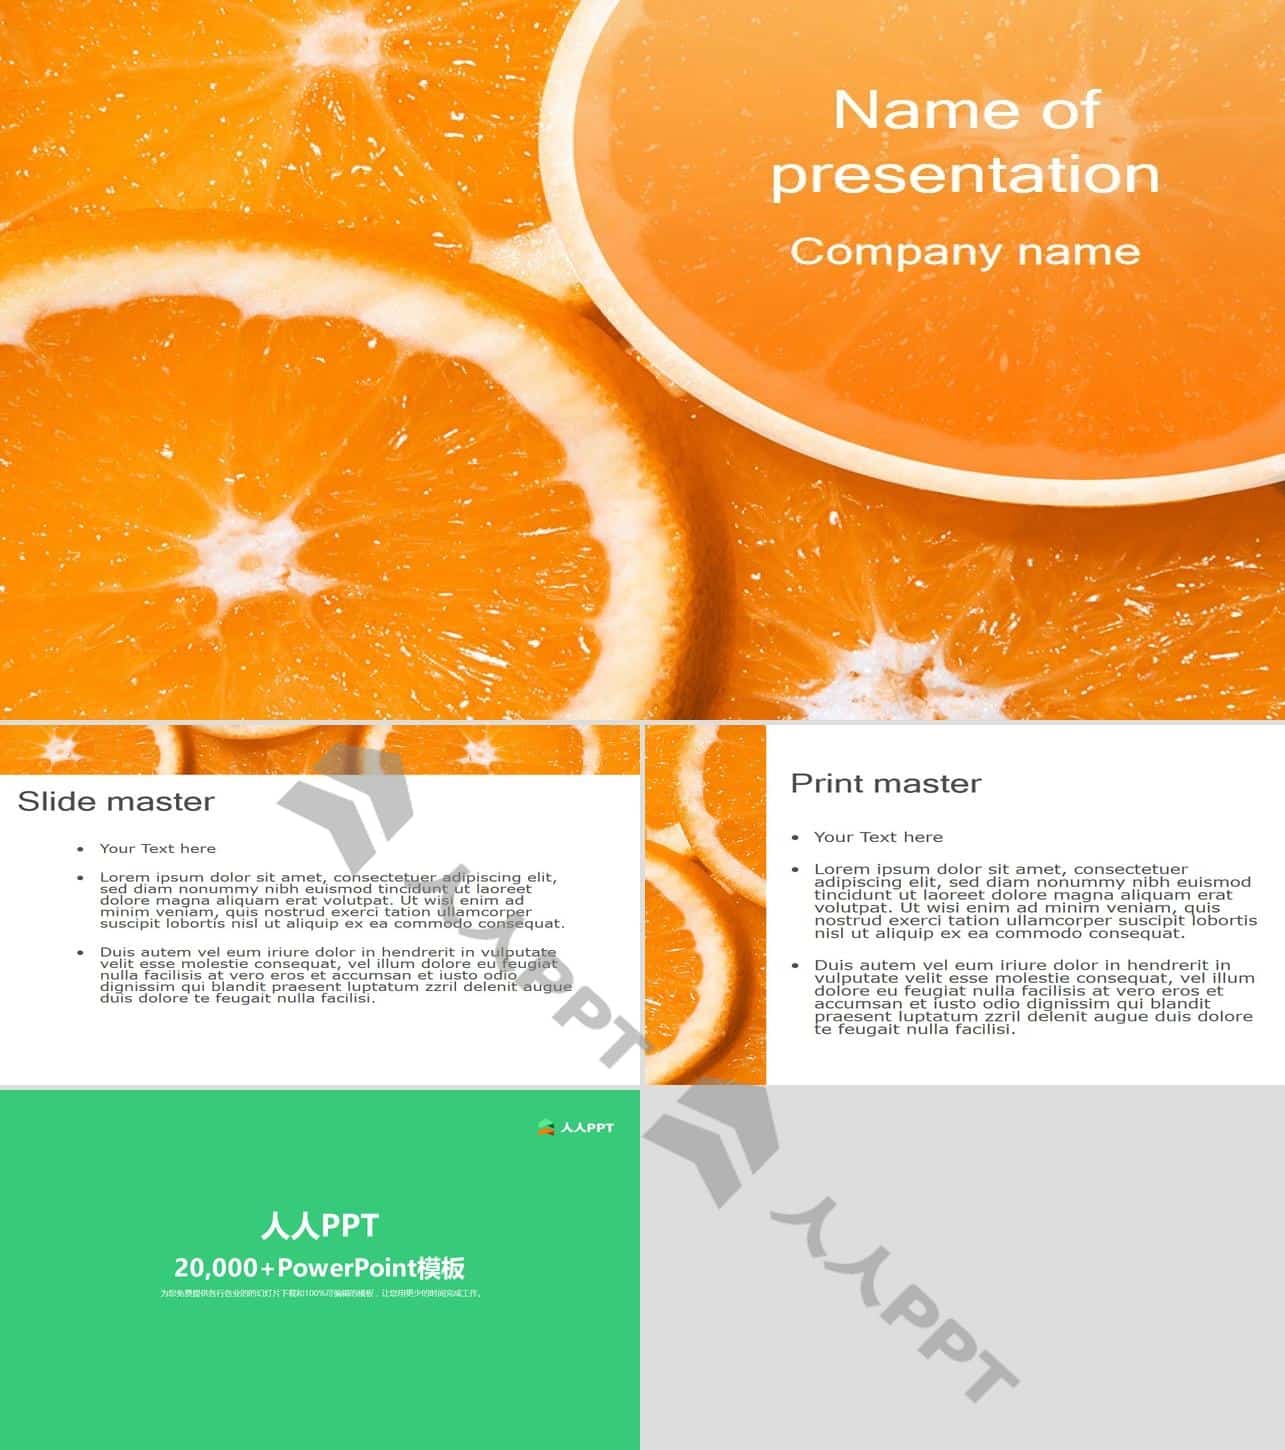 橙子水果PPT模板长图